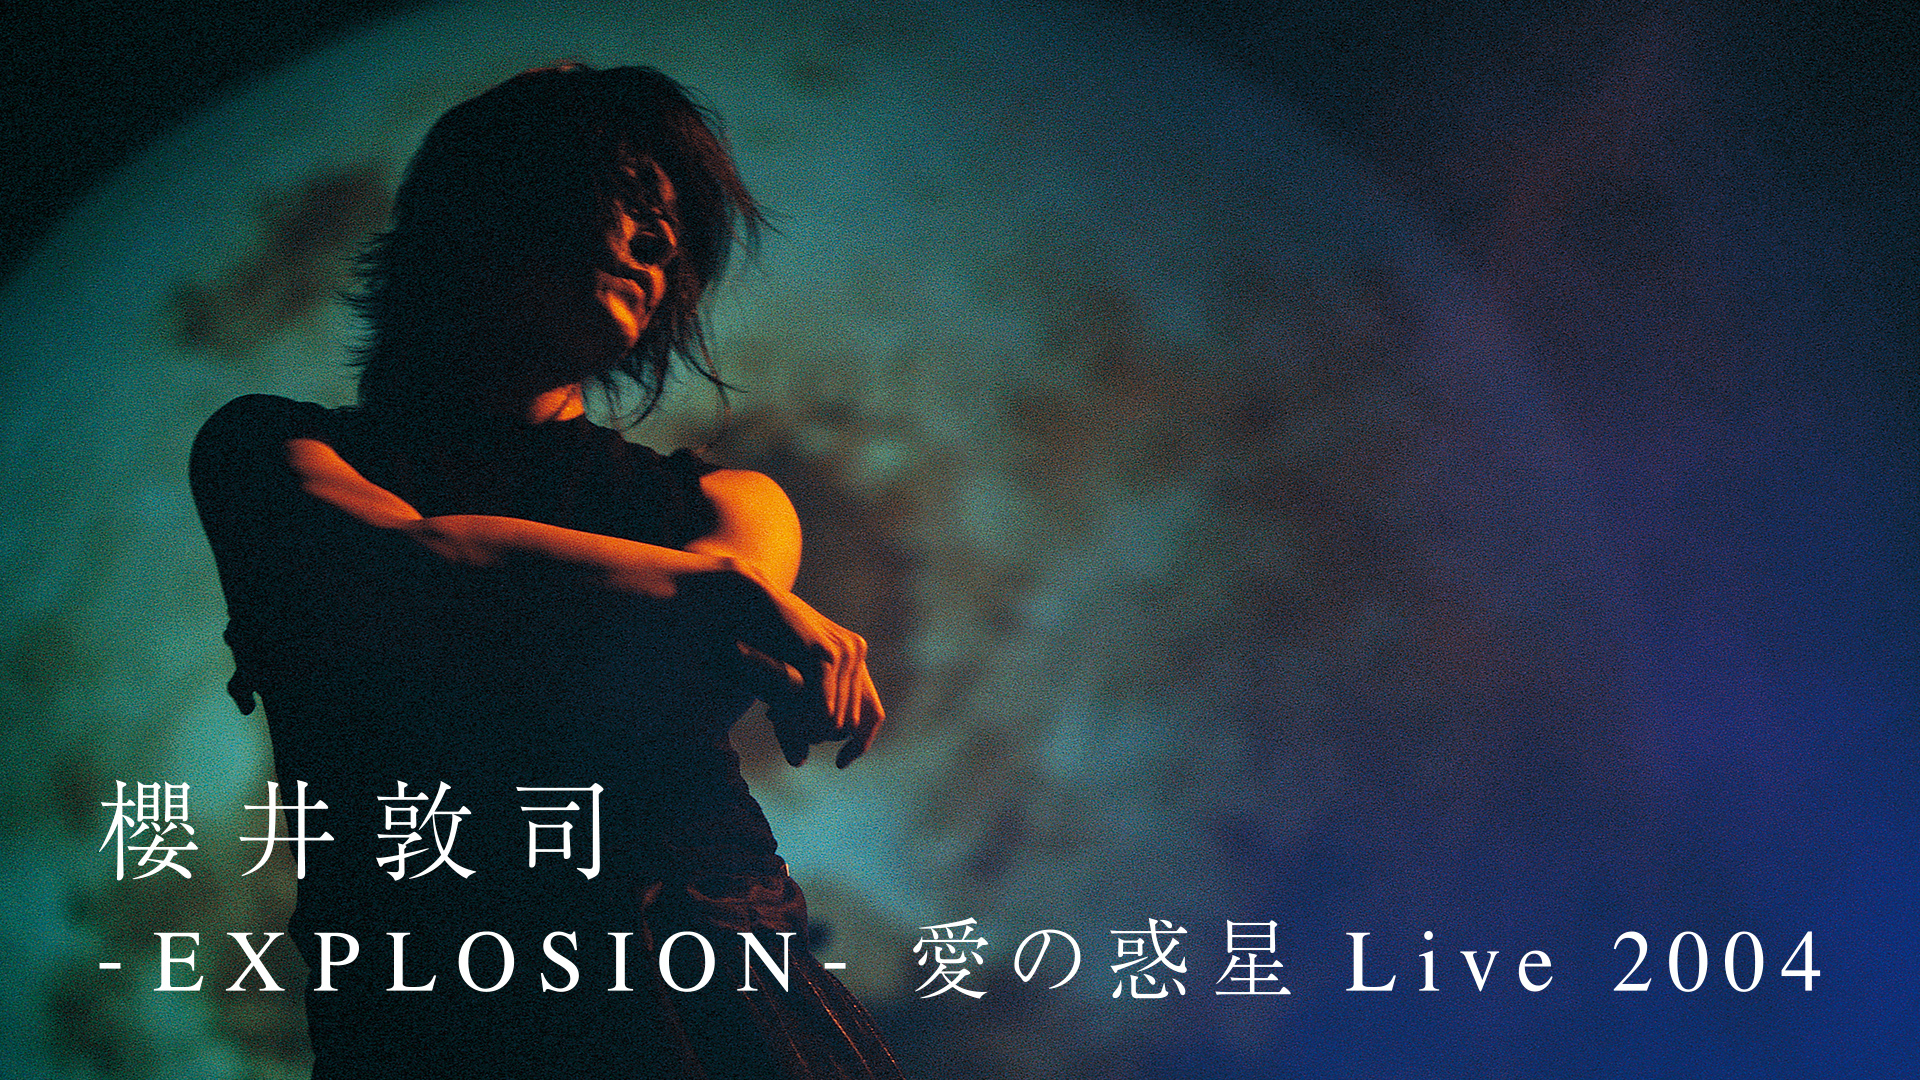 櫻井敦司「-EXPLOSION- 愛の惑星 Live 2004」 | WOWOWオンデマンドで見る